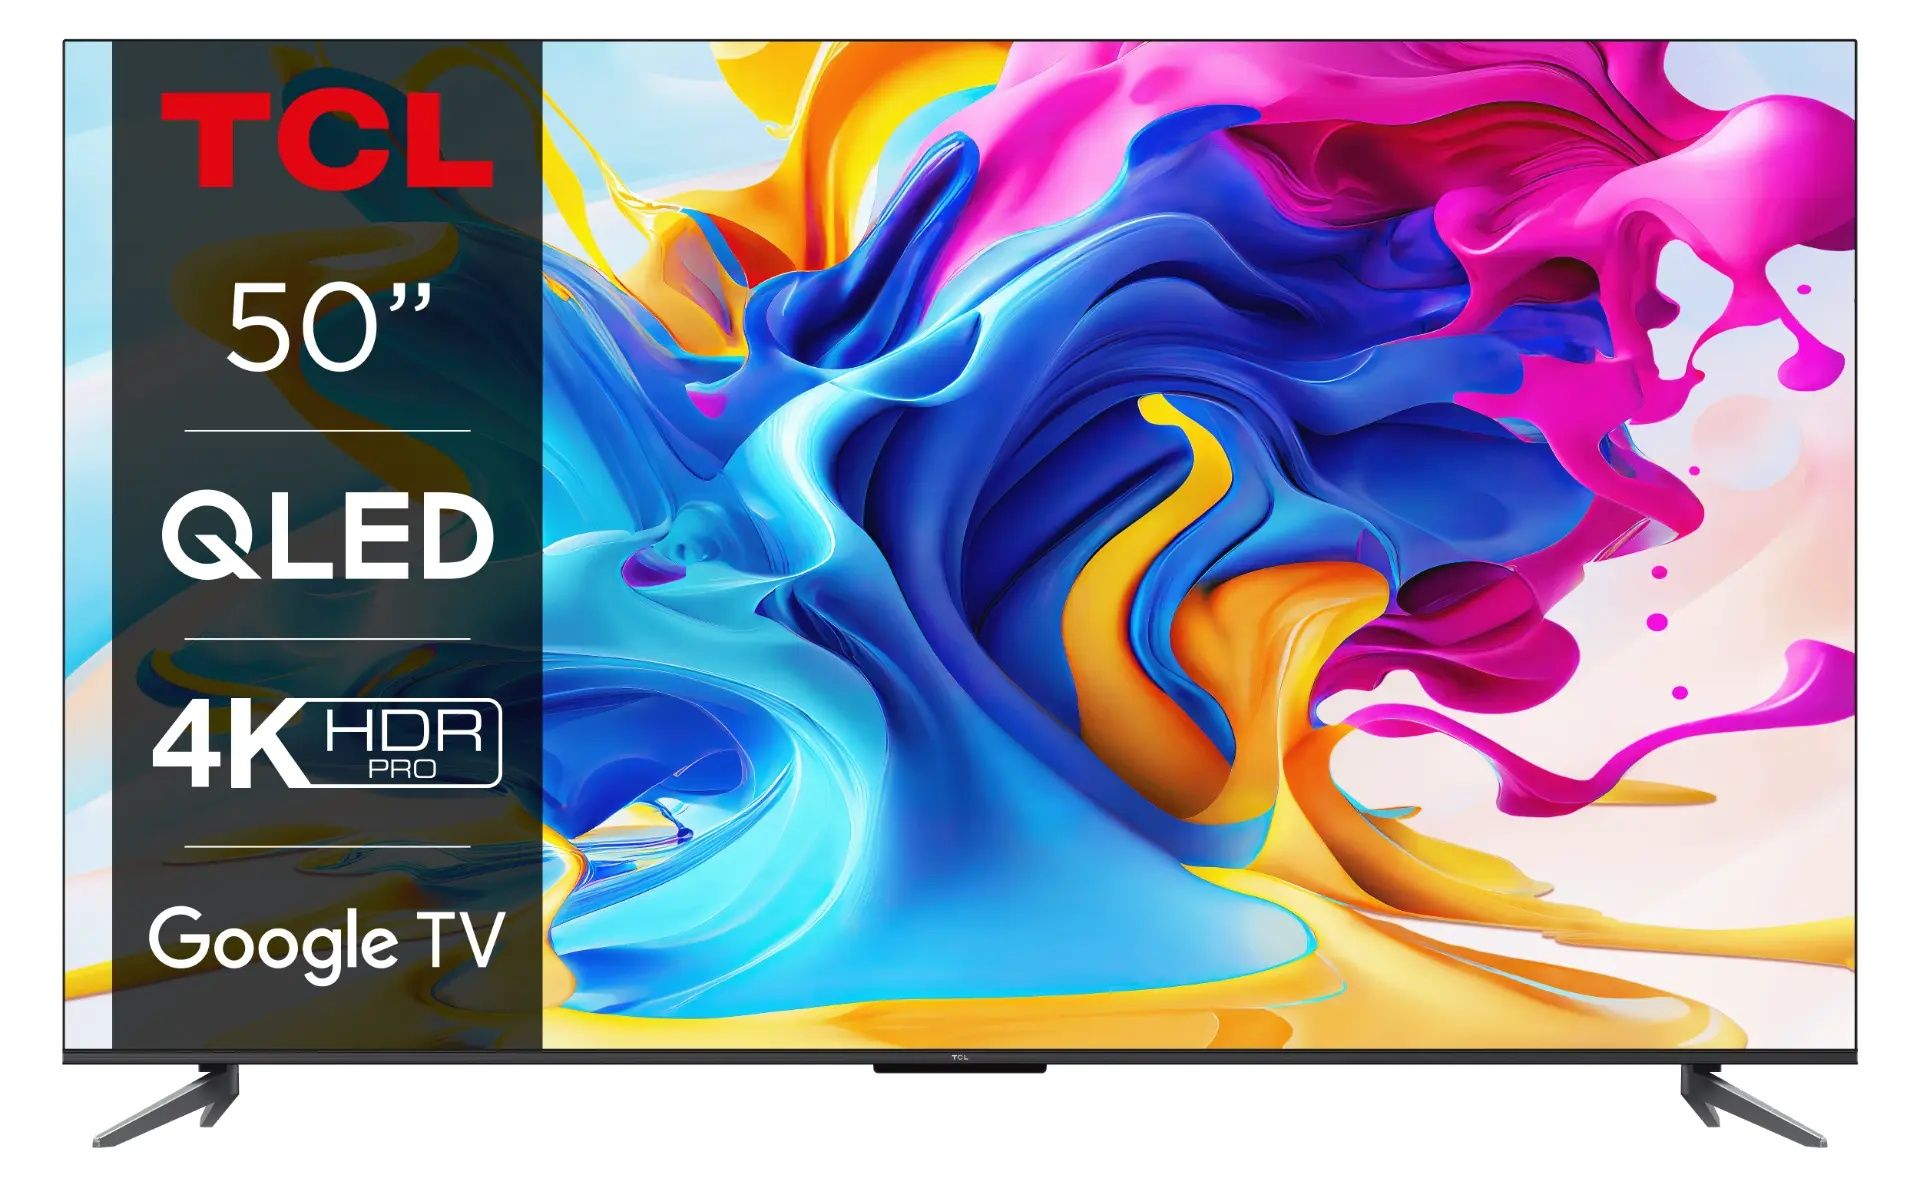 TCL QLED 4K 125cm Smart TV Google TV